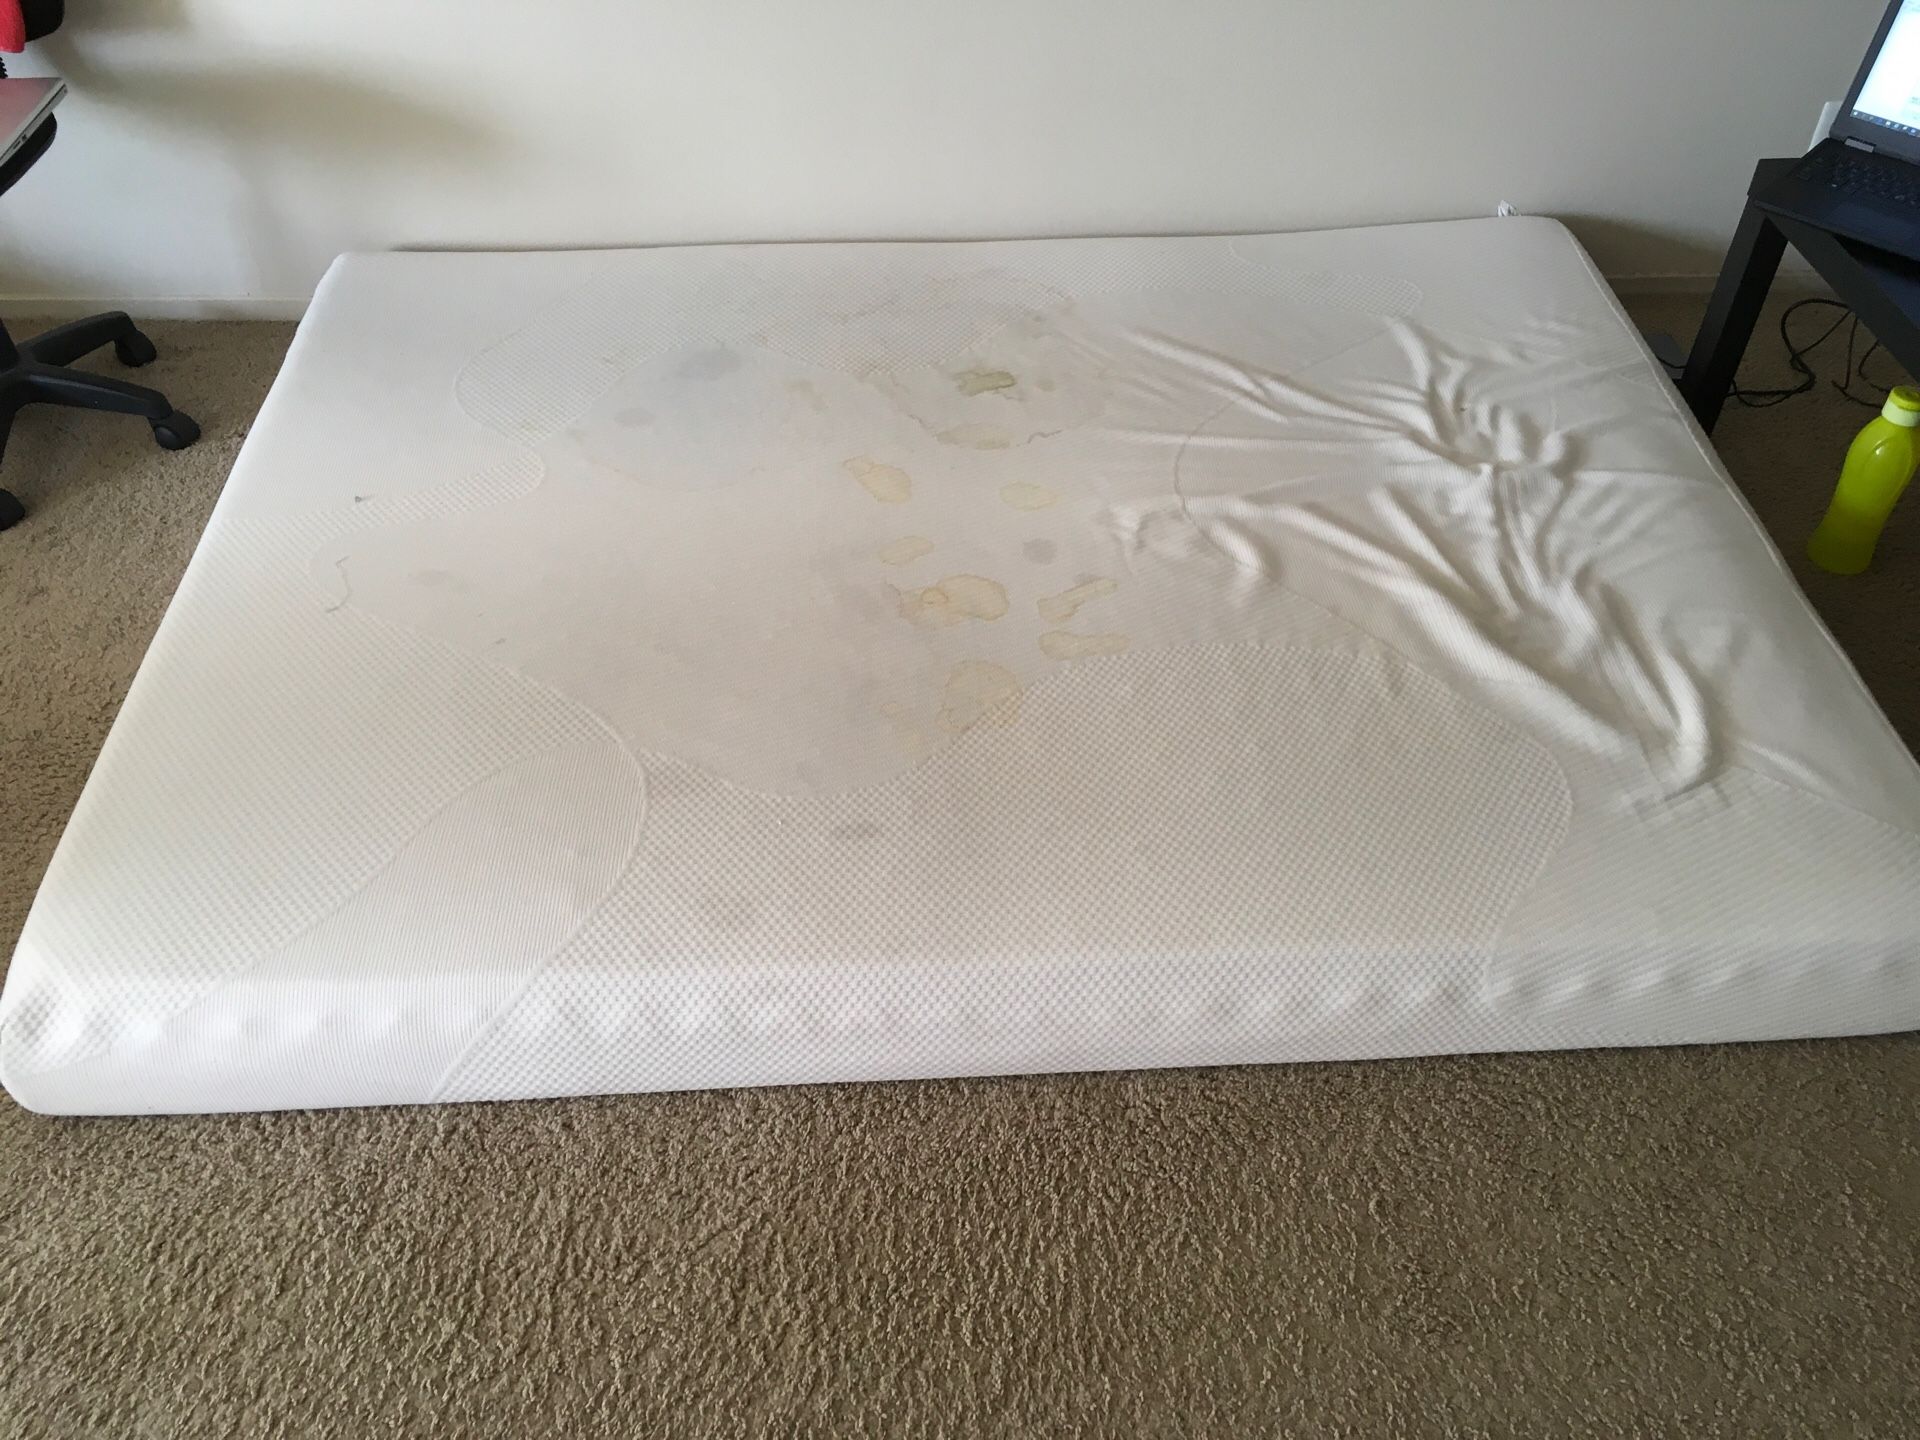 Queen size memory foam mattress for free!!....immediate pickup...